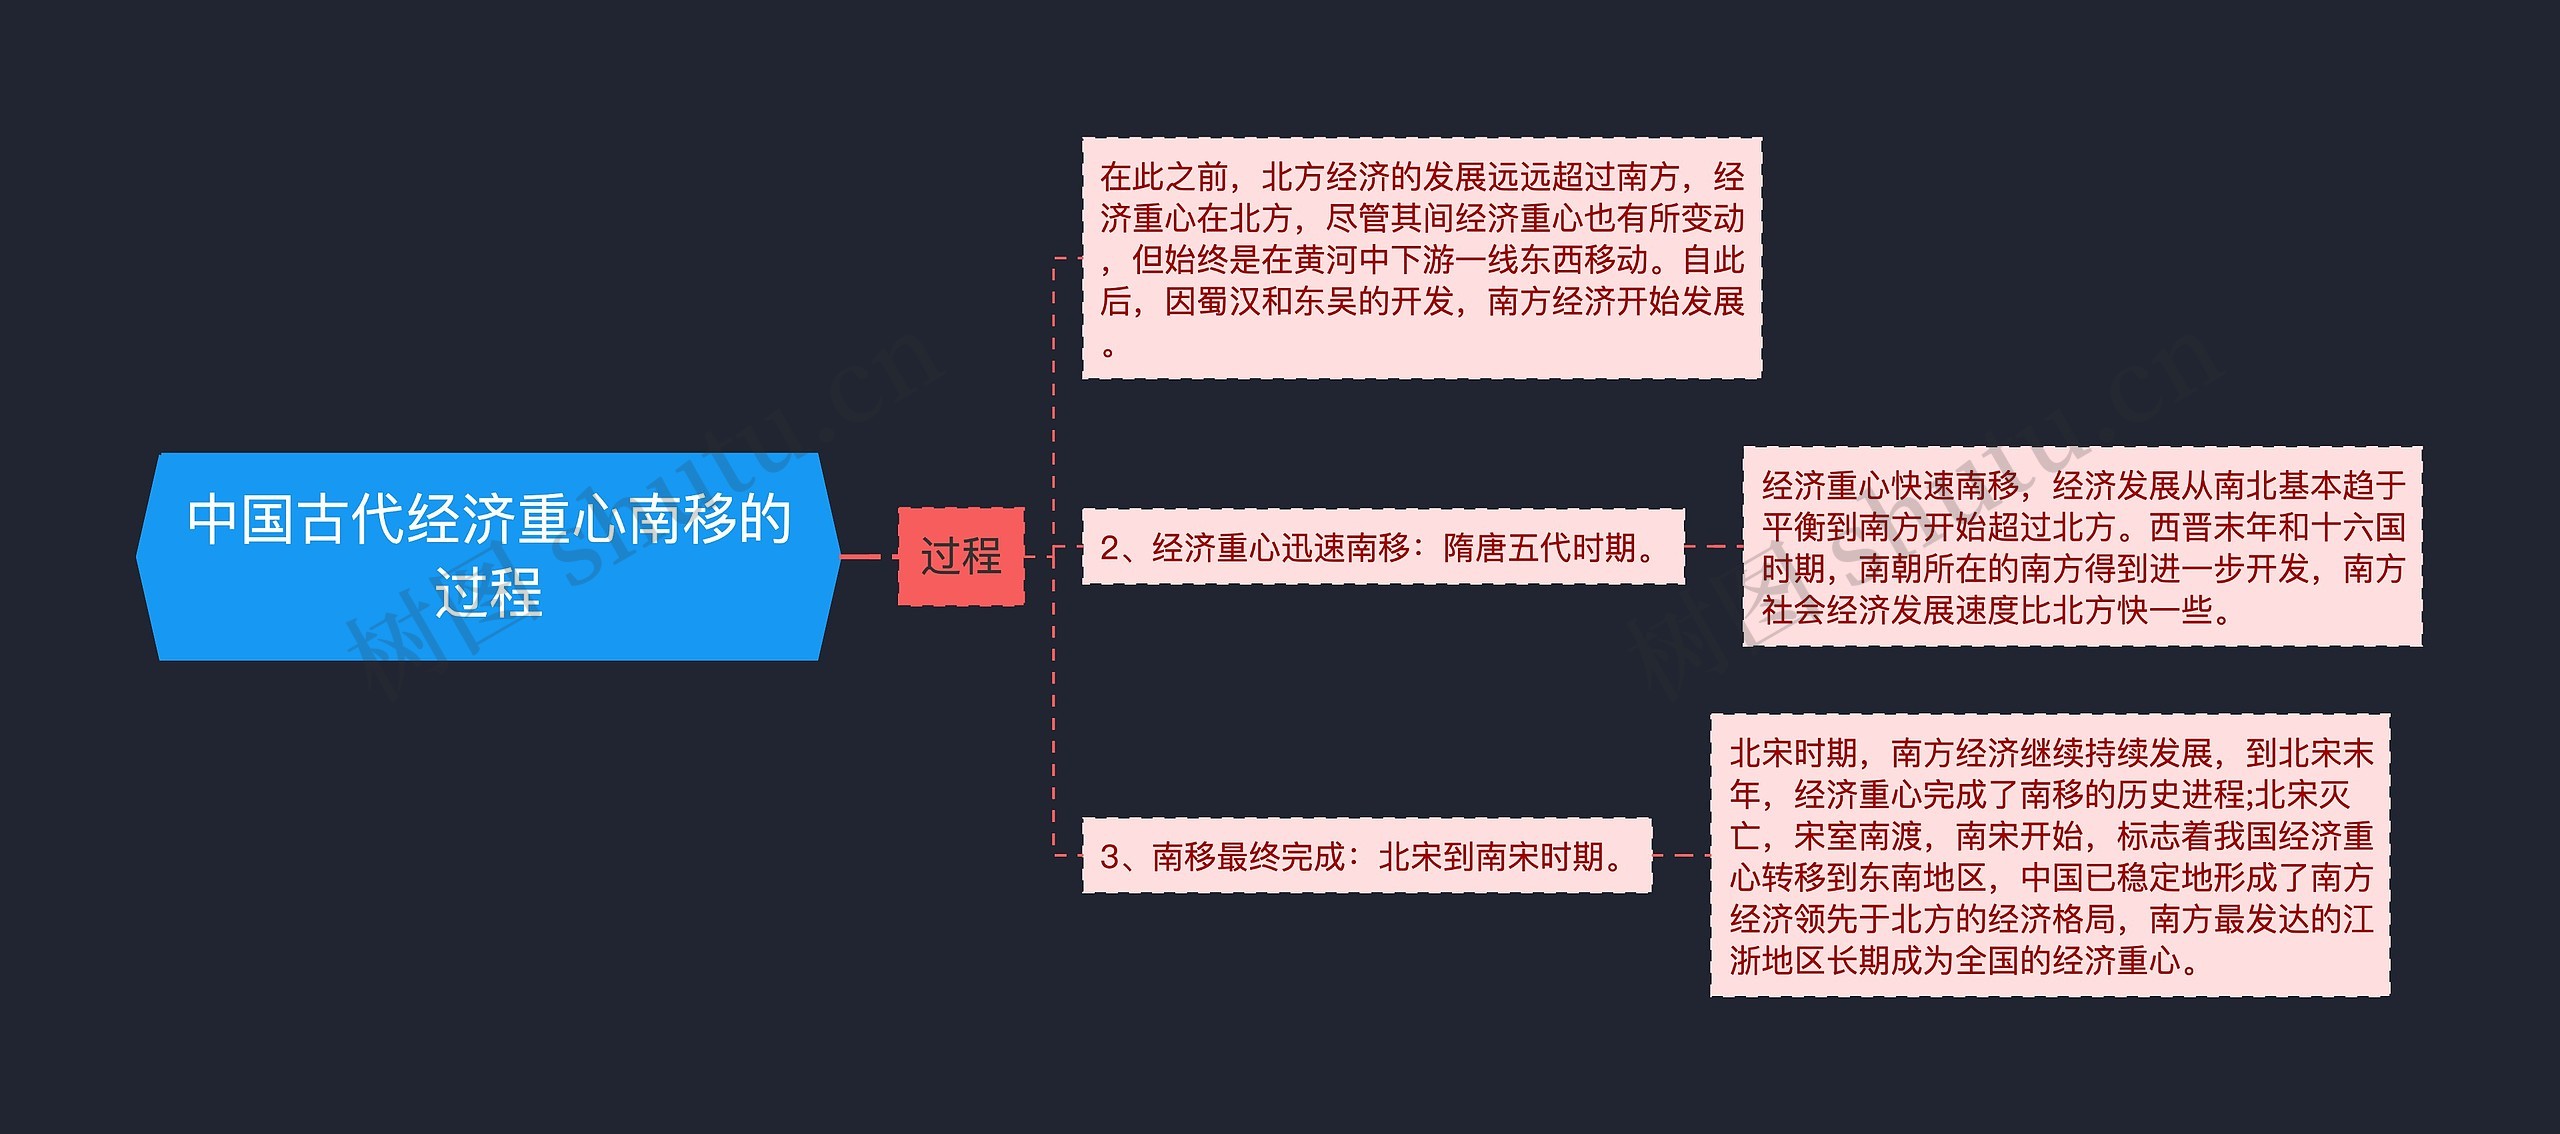 中国古代经济重心南移的过程思维导图